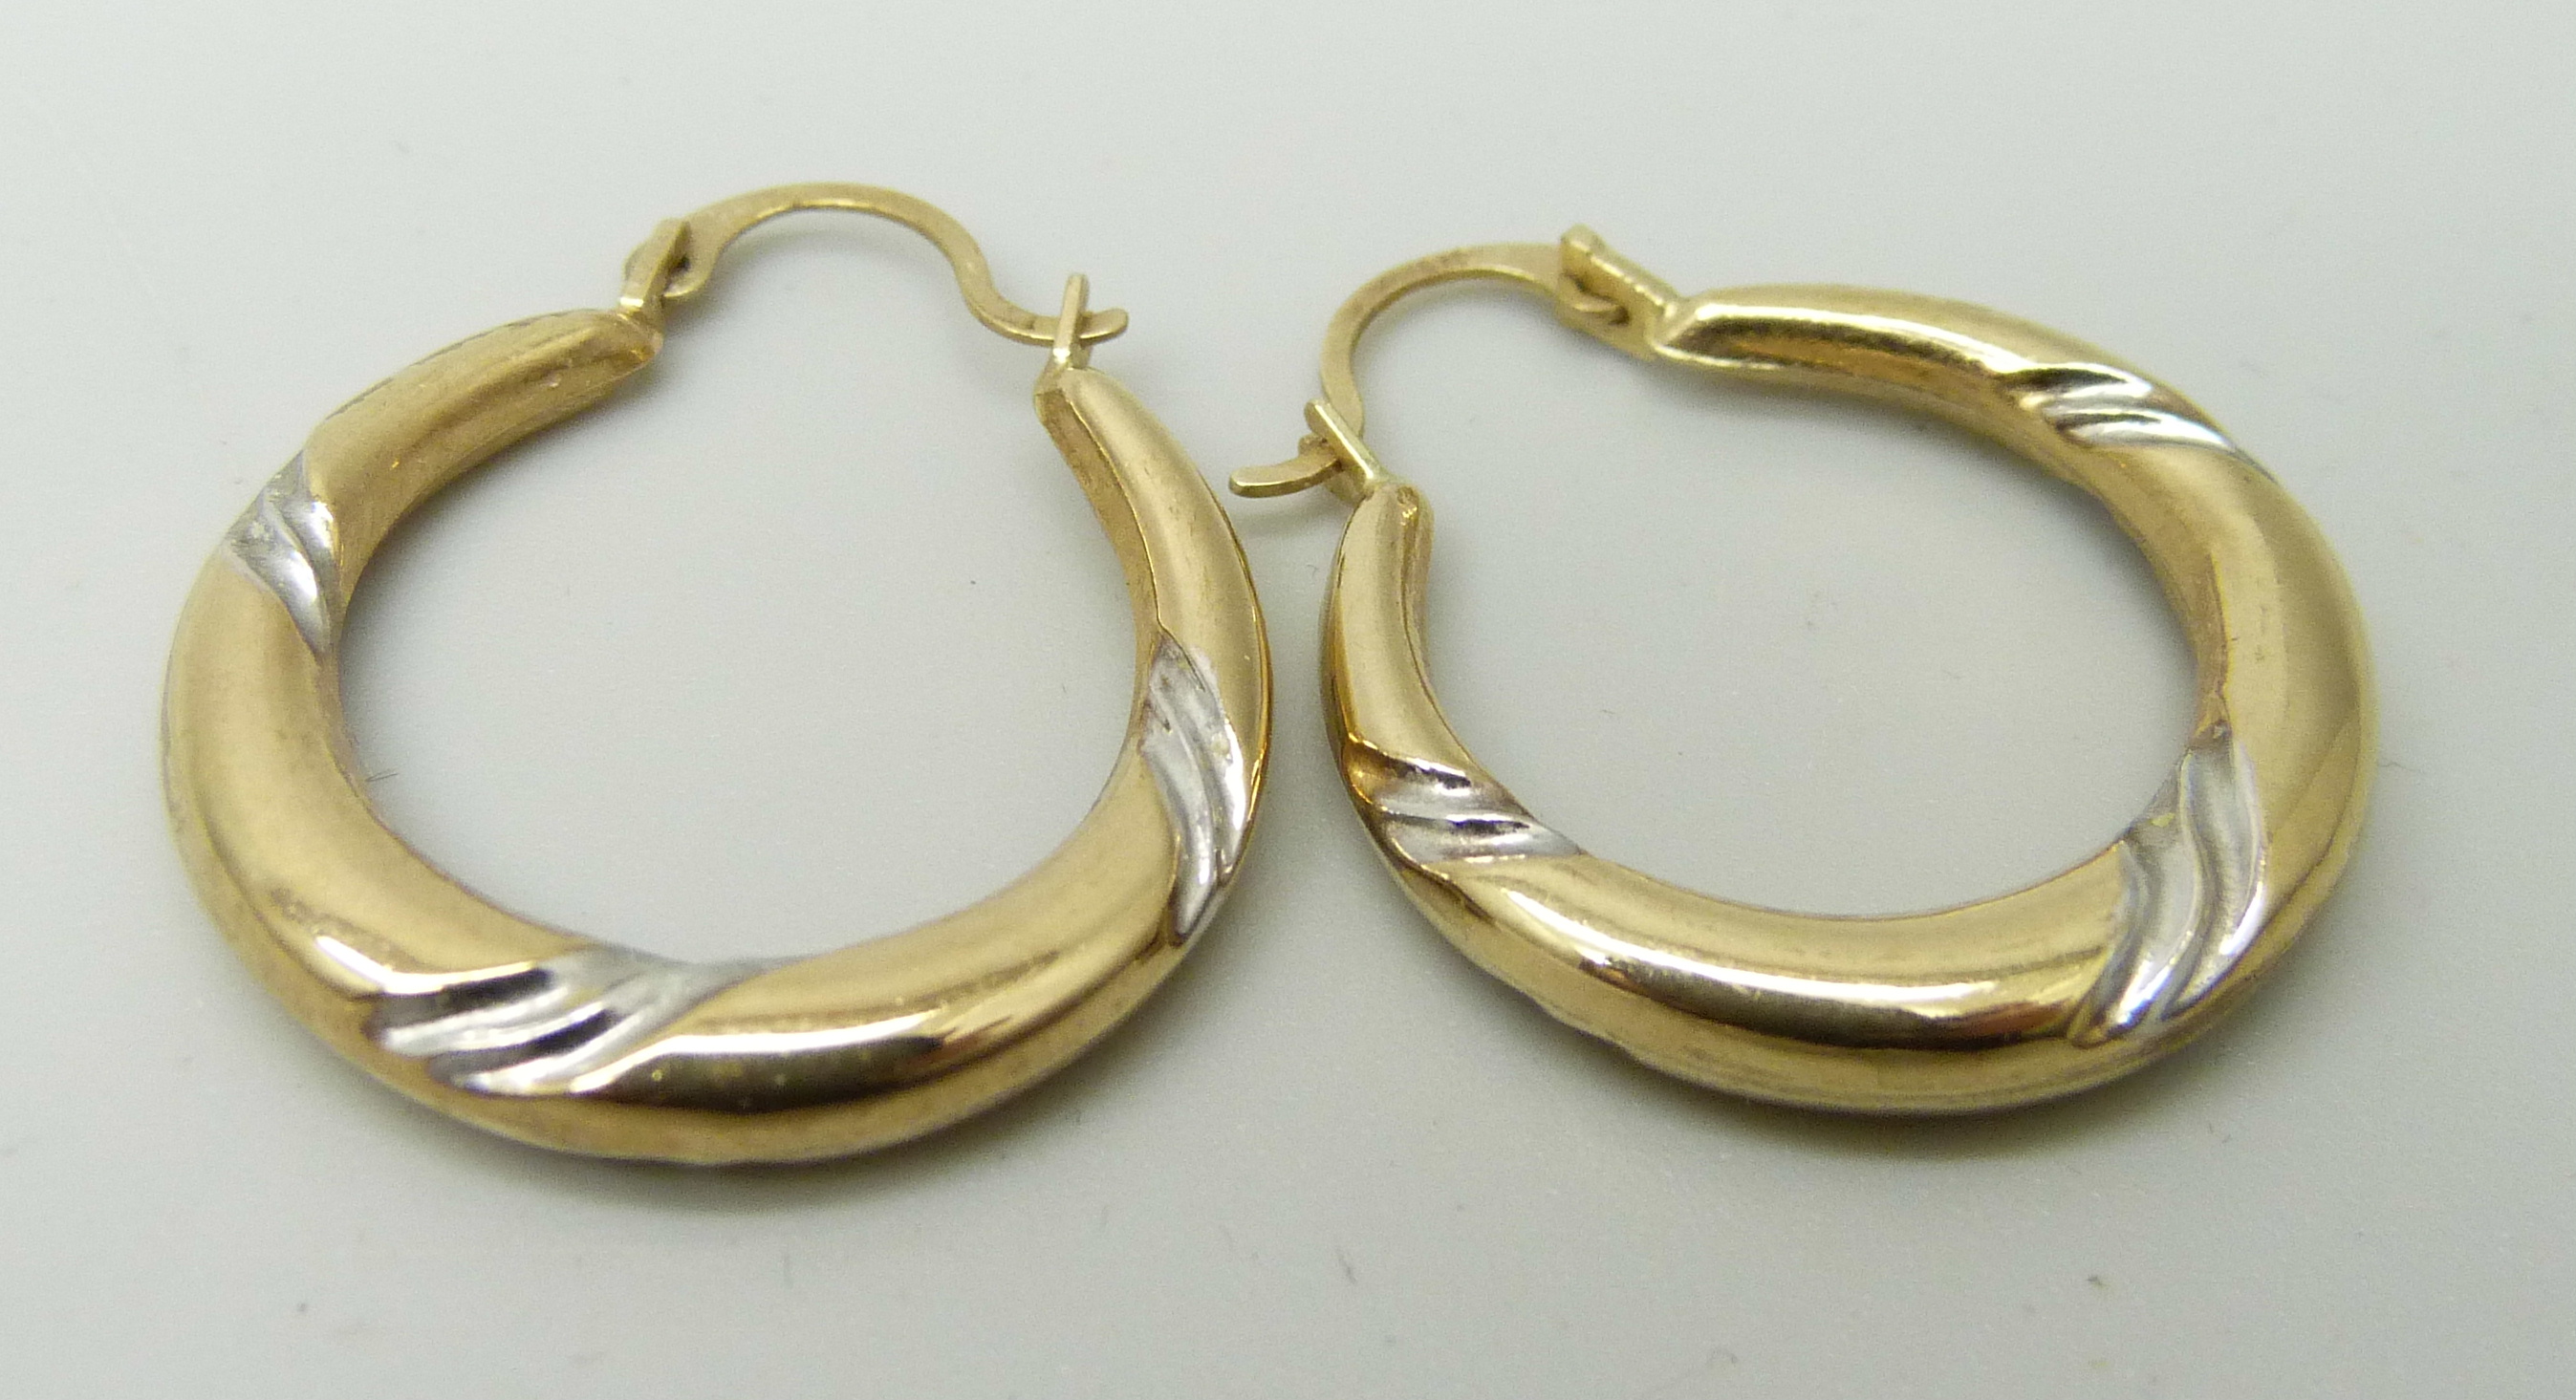 A pair of 9ct gold hoop earrings, 1g - Image 2 of 2